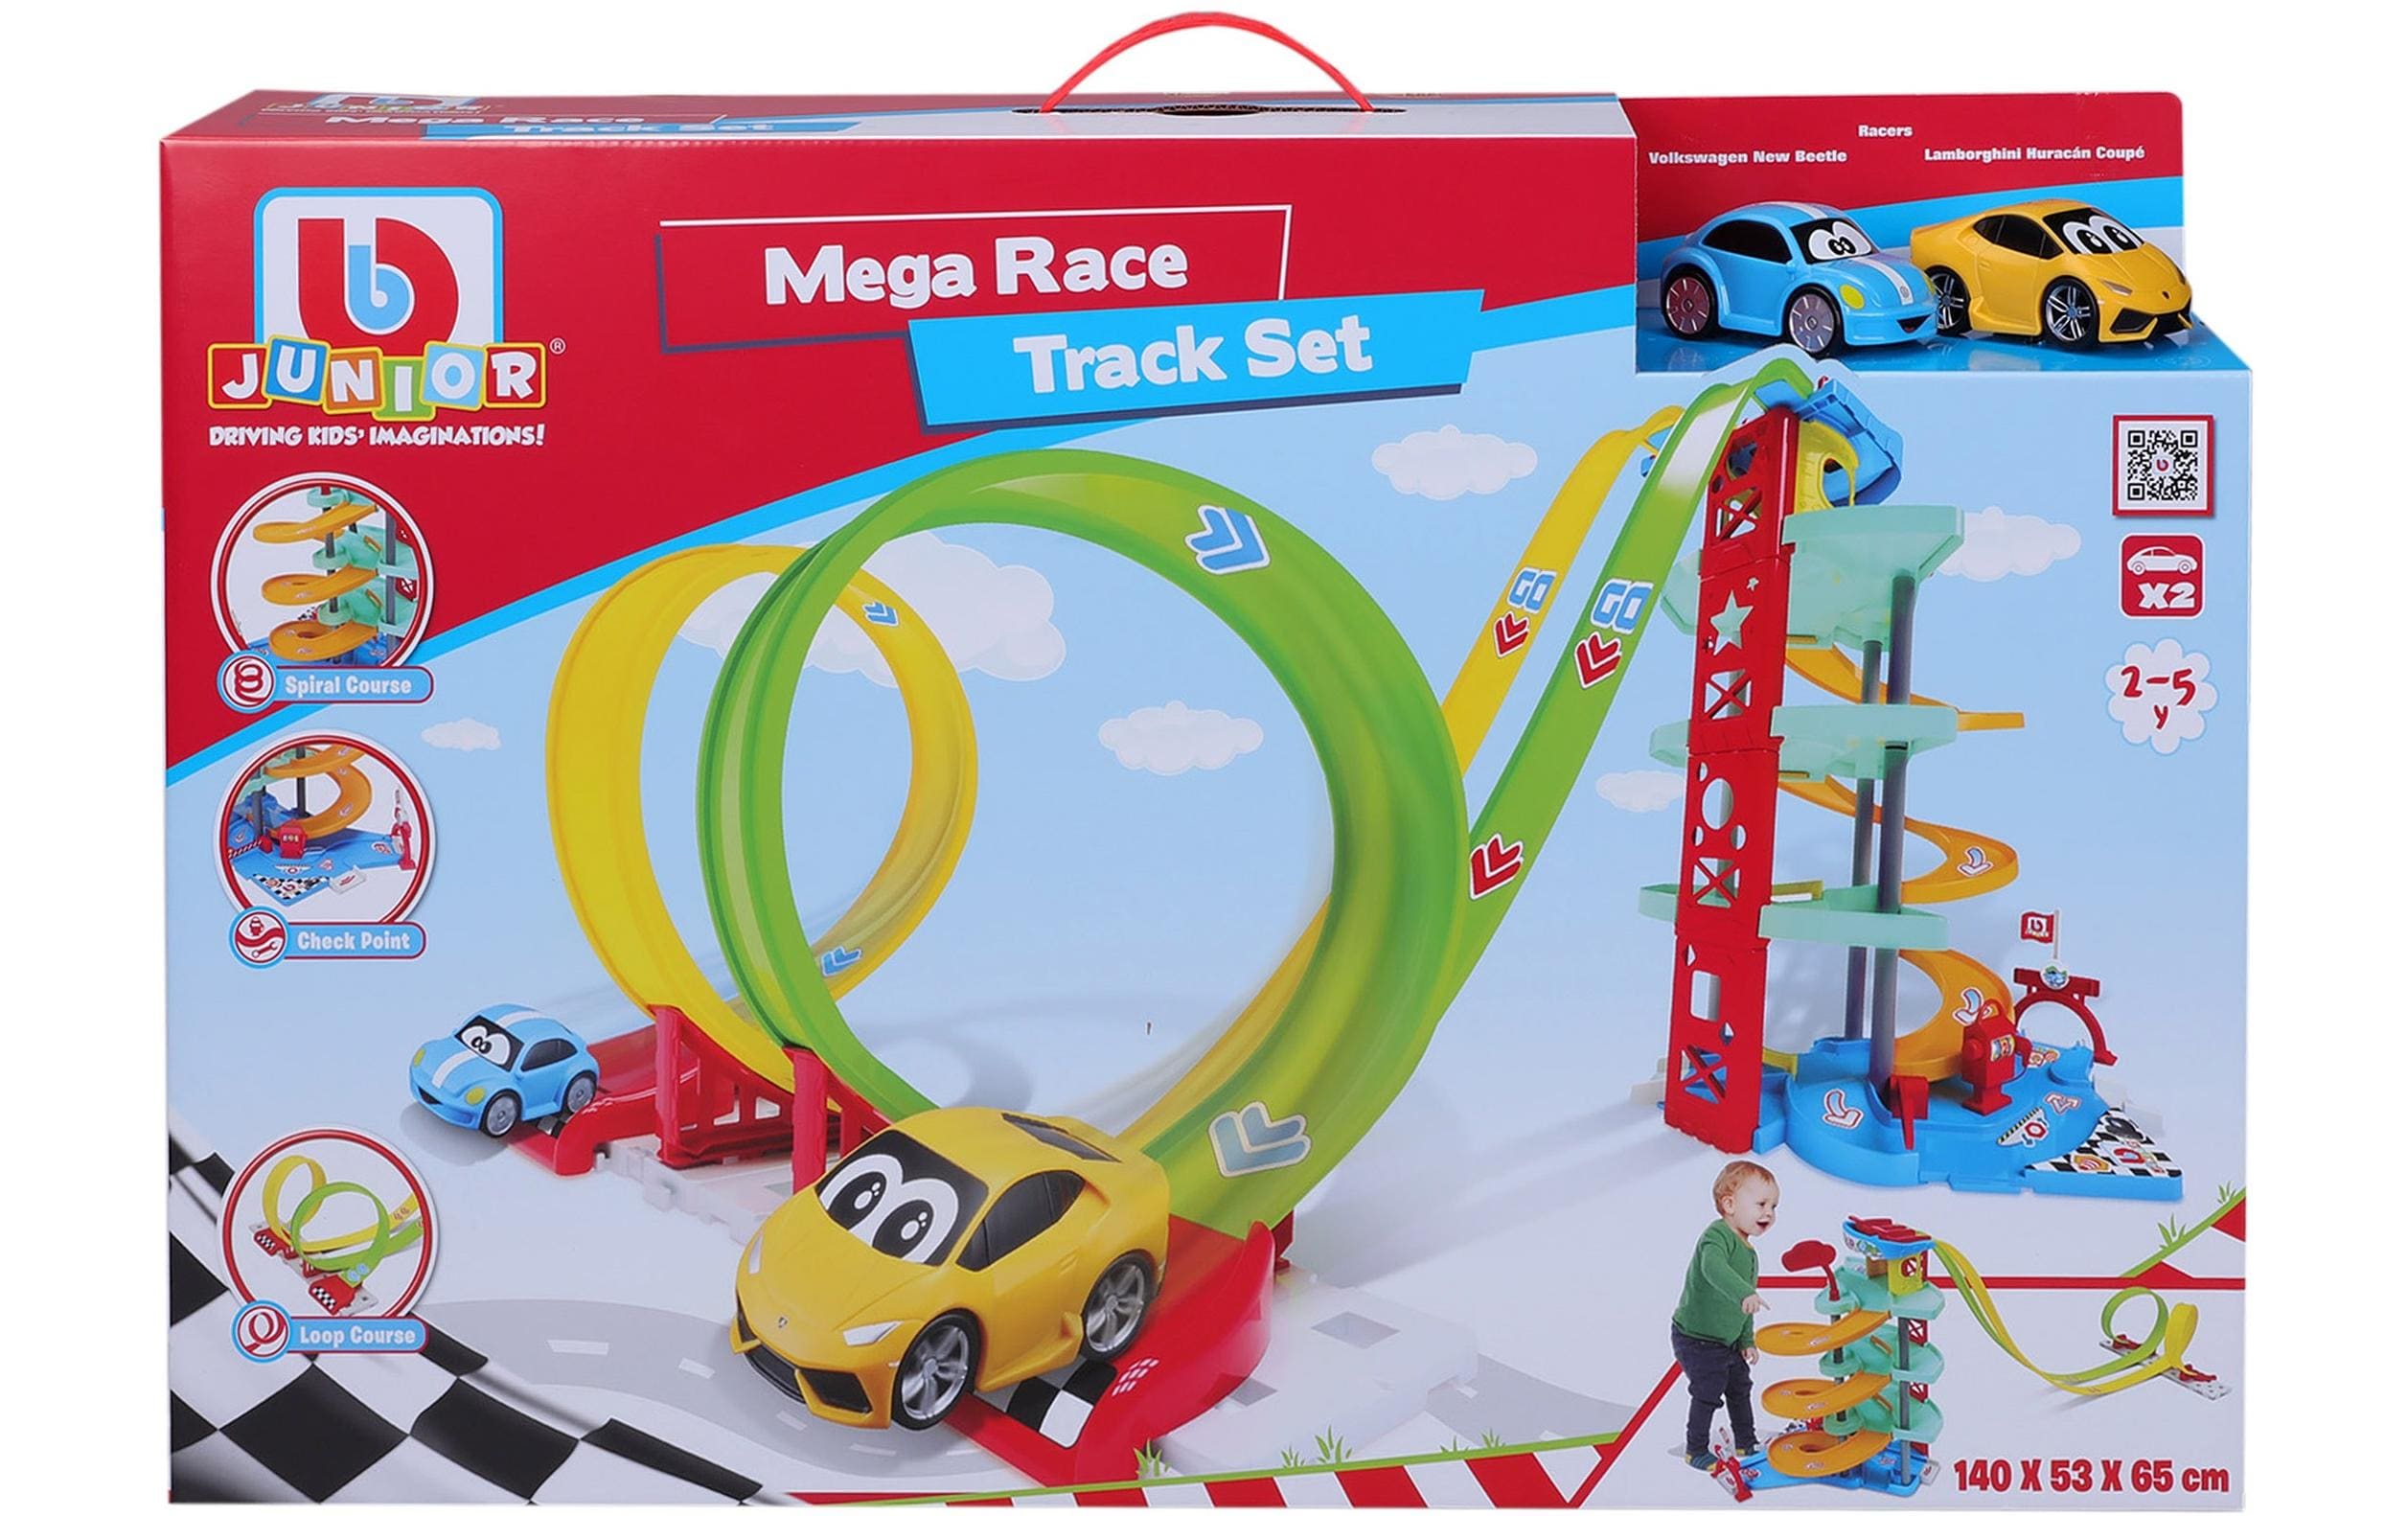 BB Junior Mega Race Track Set Garage